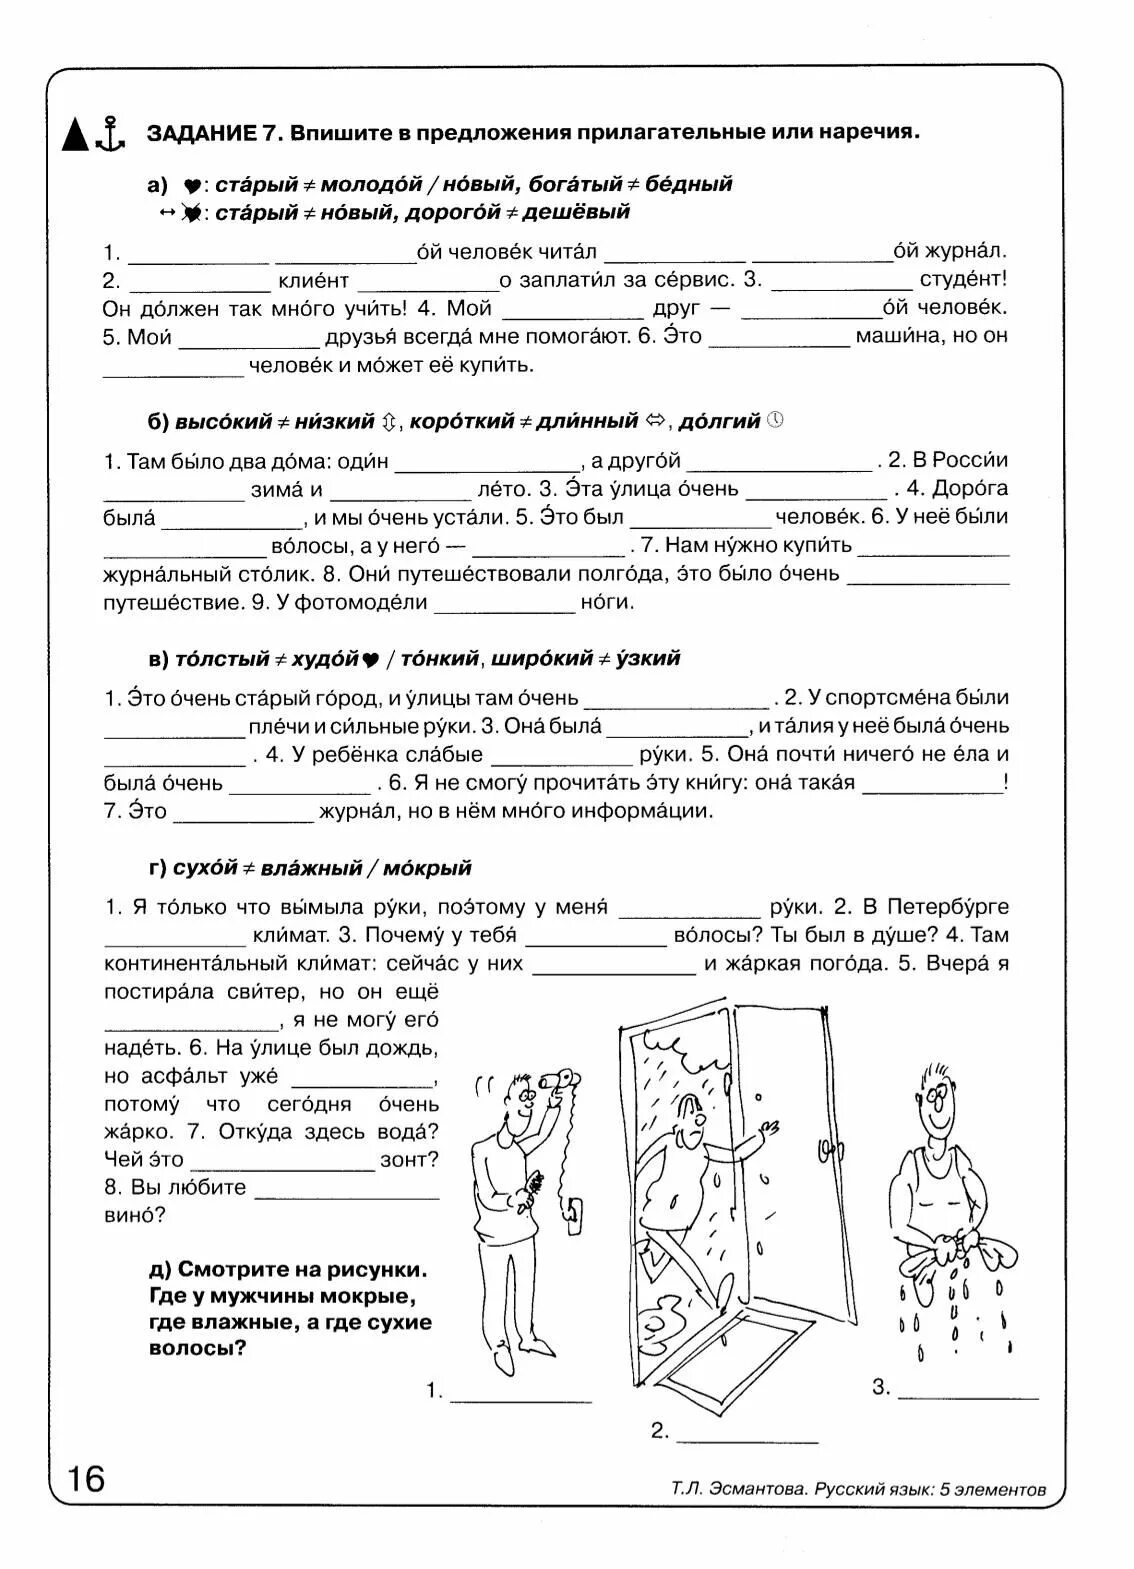 Русский язык 5 элементов. 5 Элементов учебник РКИ.